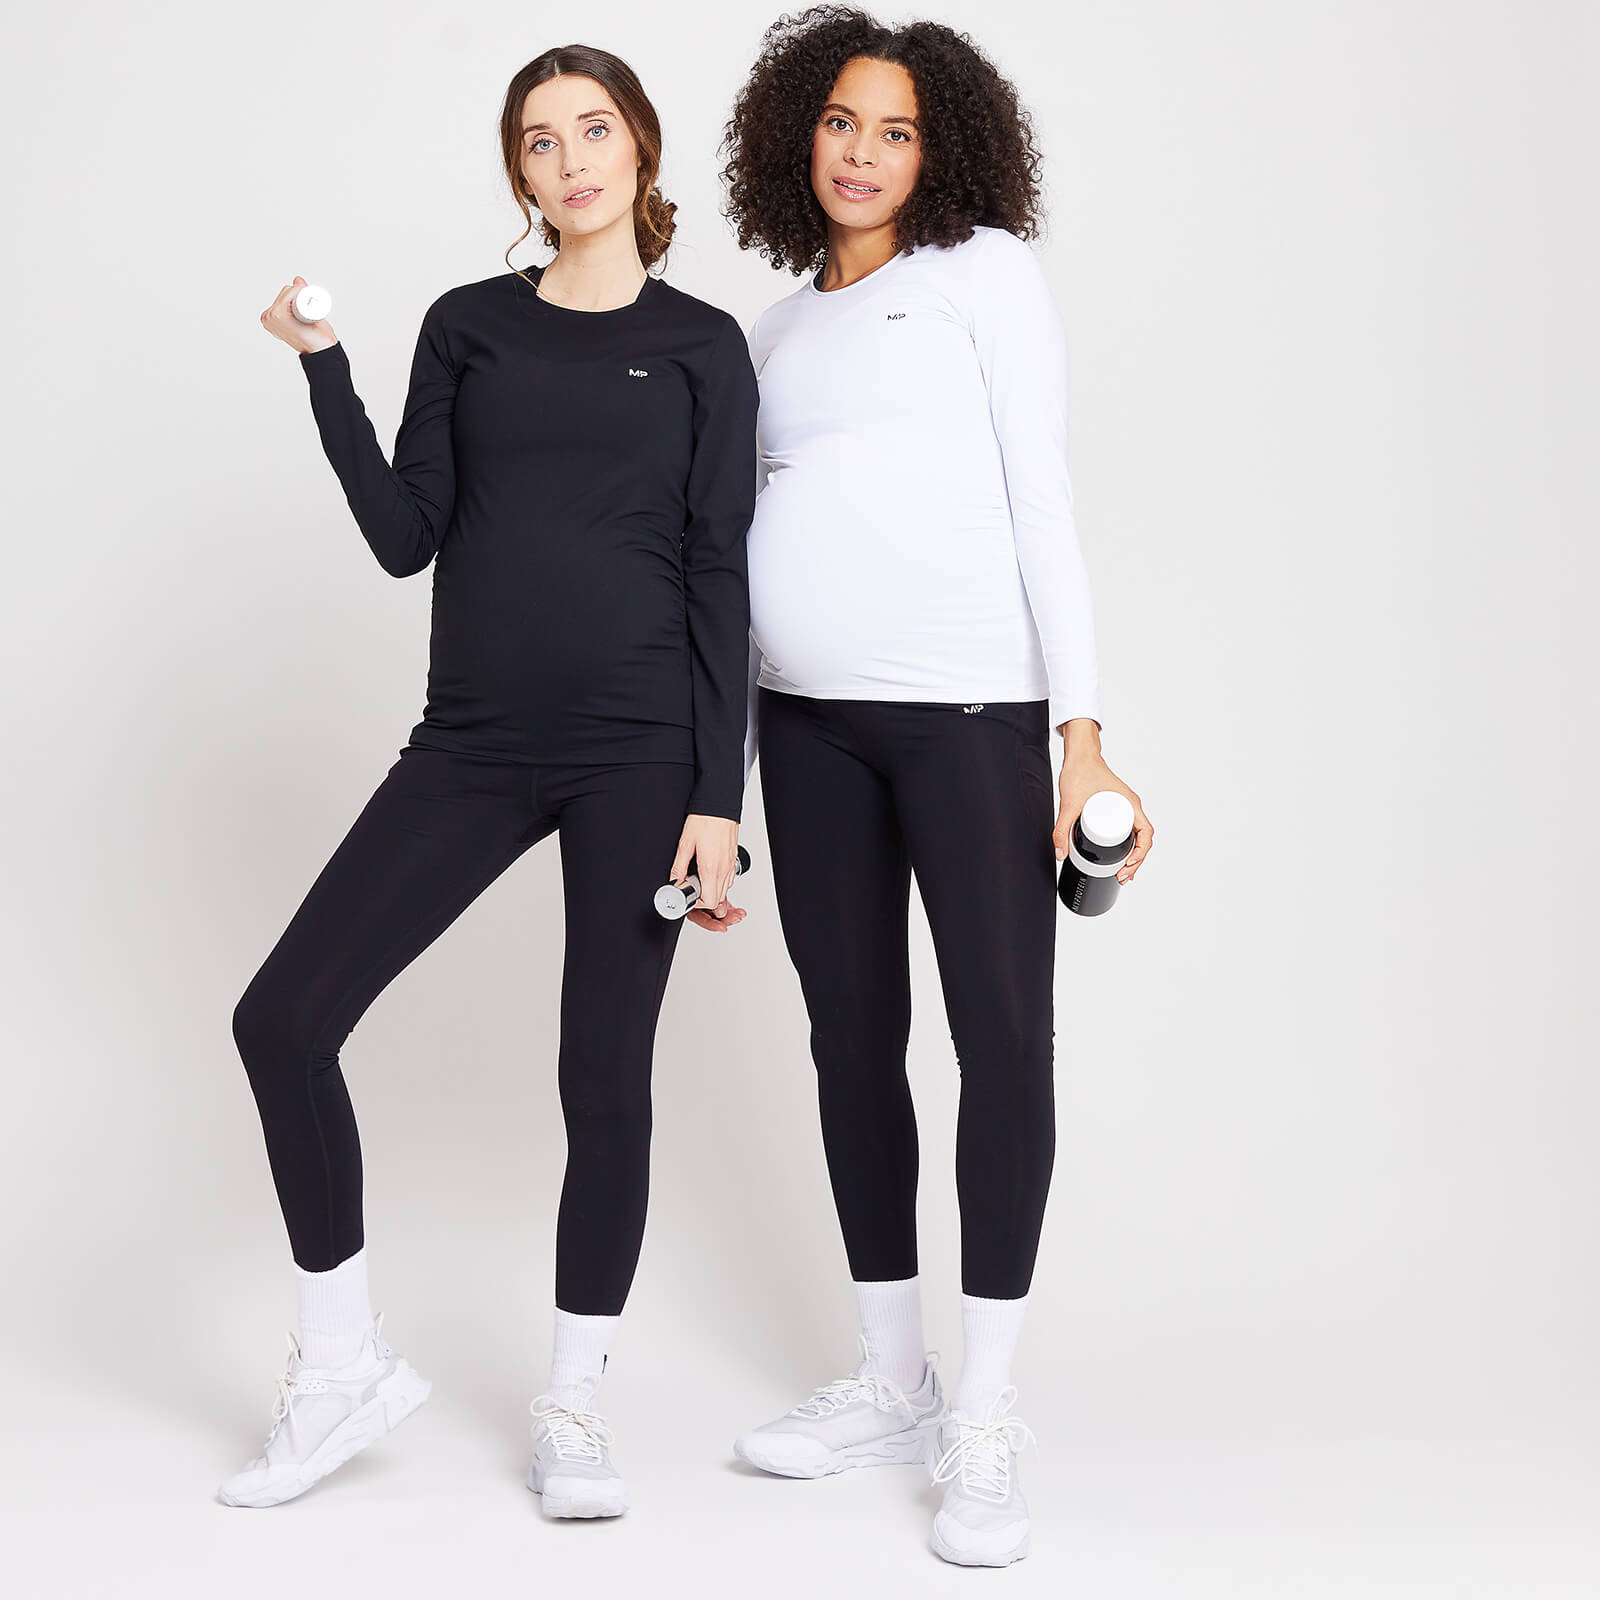 Duo de hauts de maternité à manches longues MP Power pour femmes – Noir/Blanc - XS